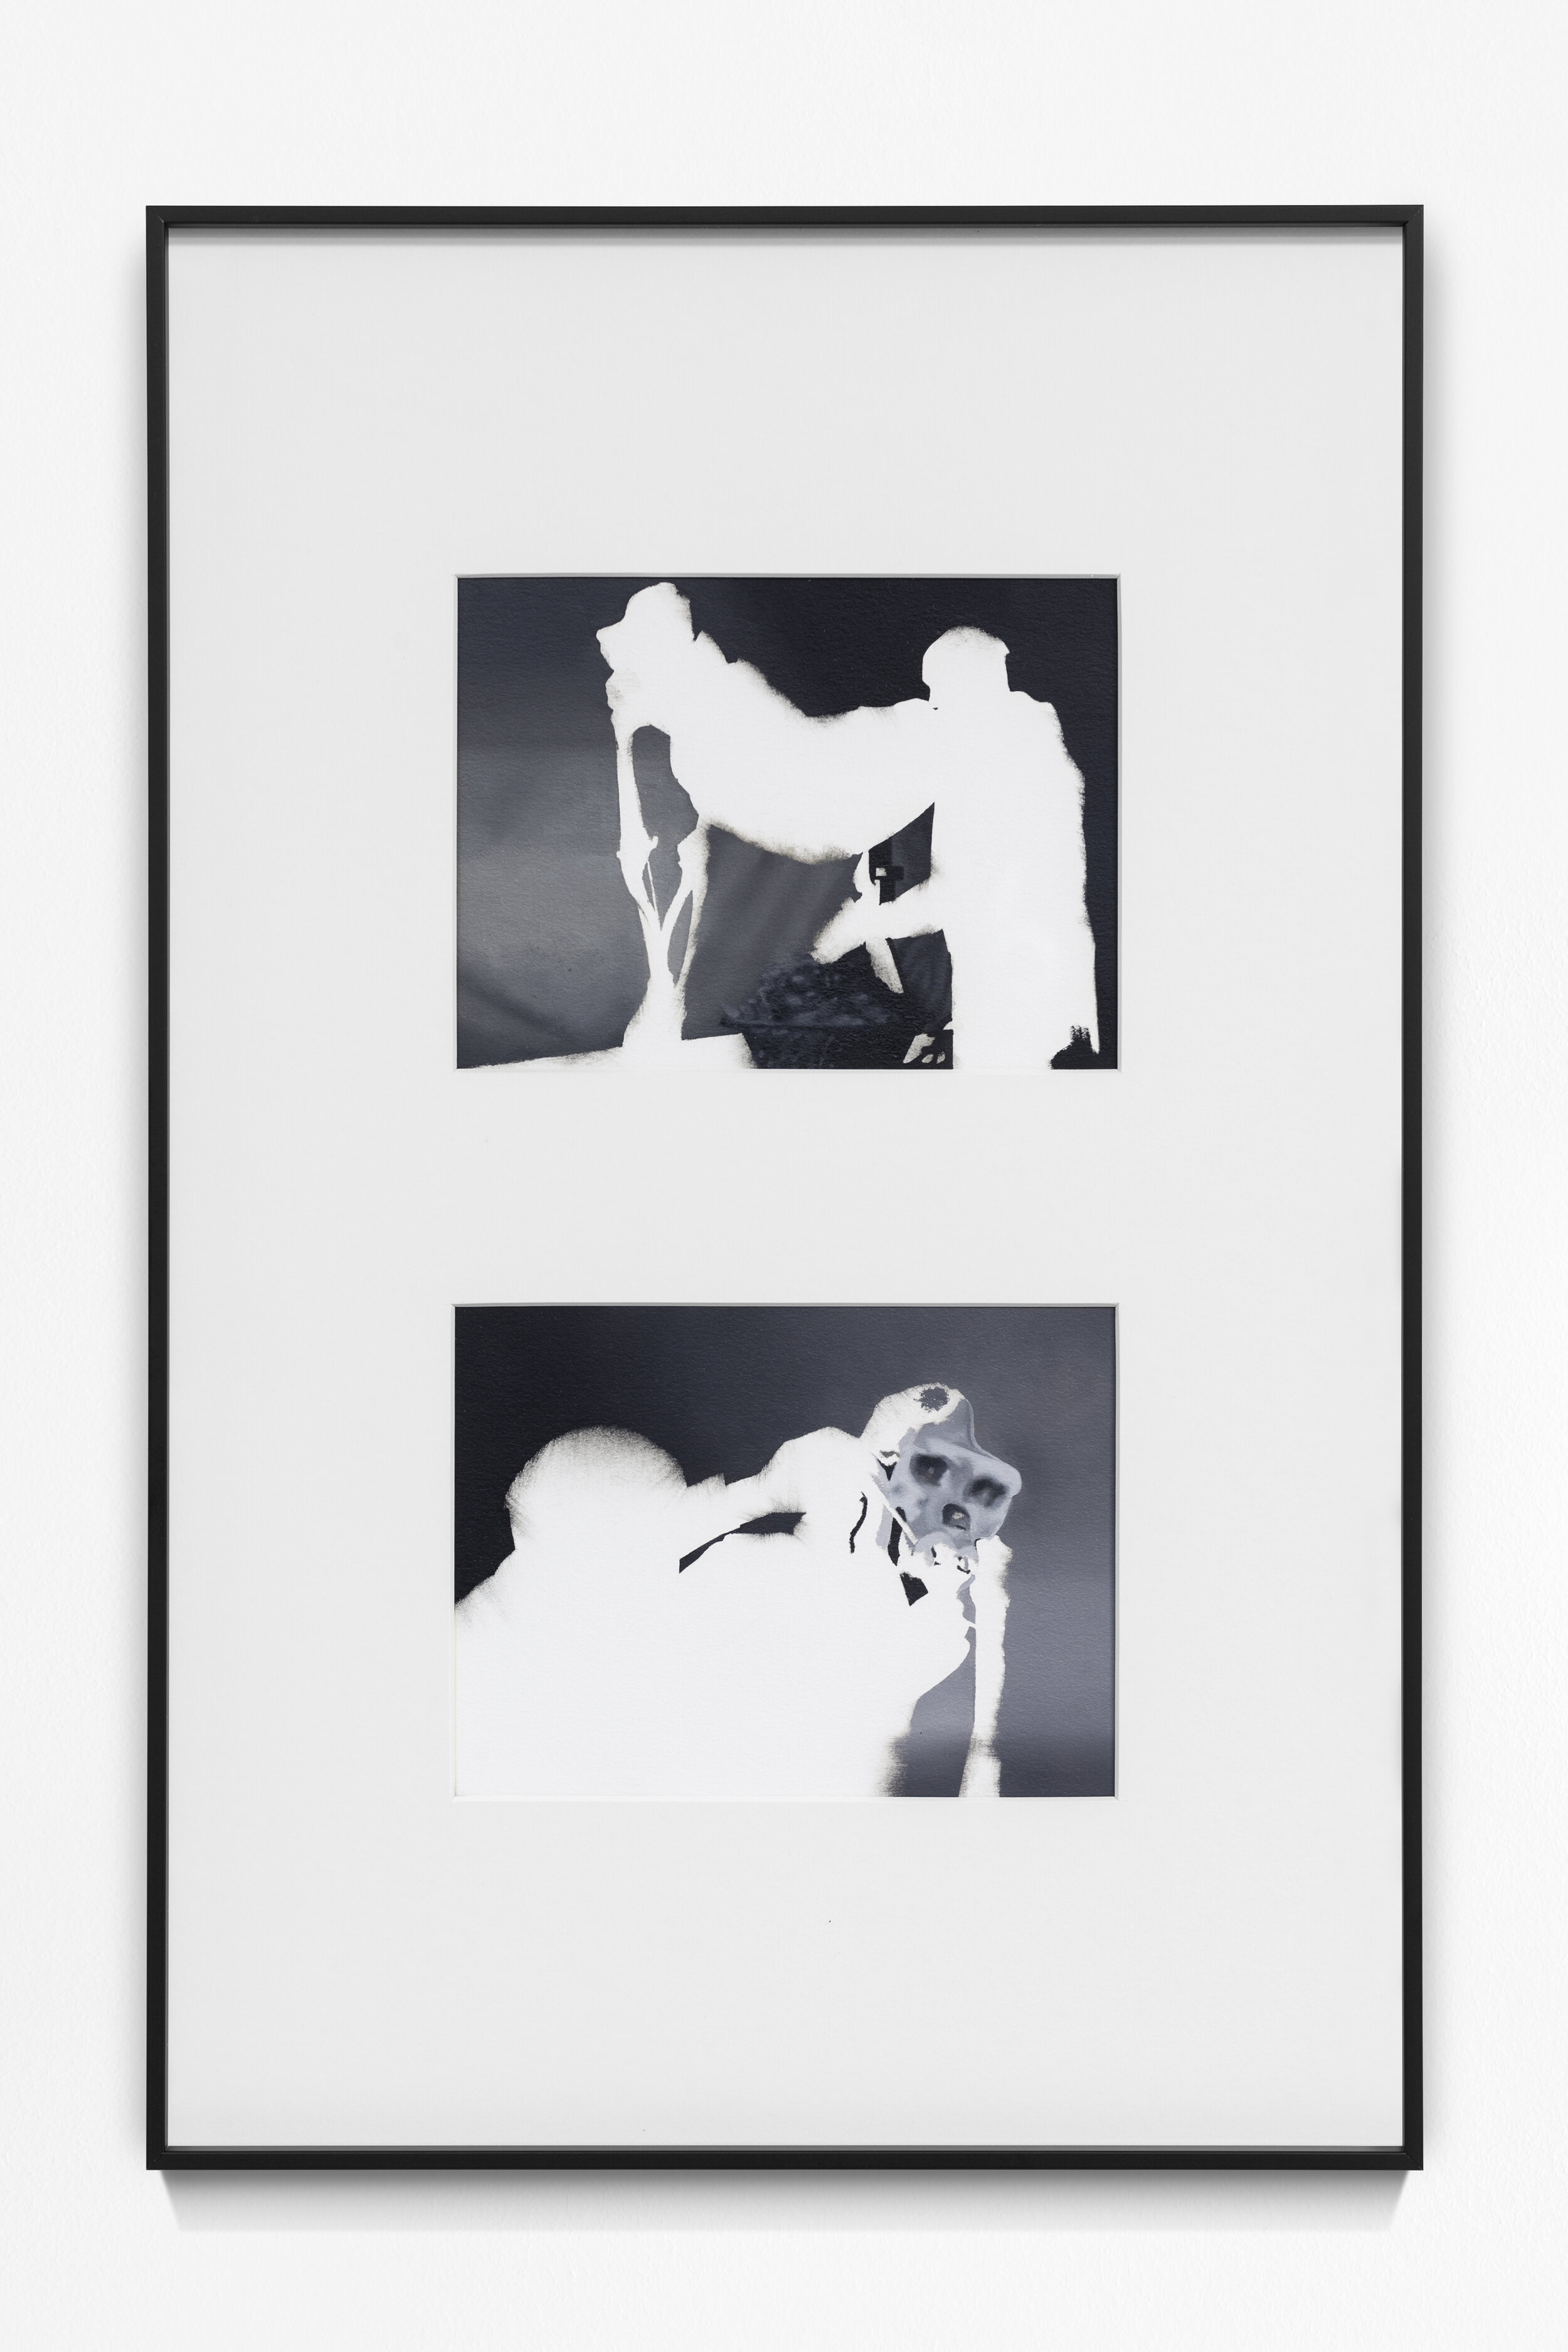    Tenderness   , oil on paper, 14x22,5cm (53x34cm framed)    2019  